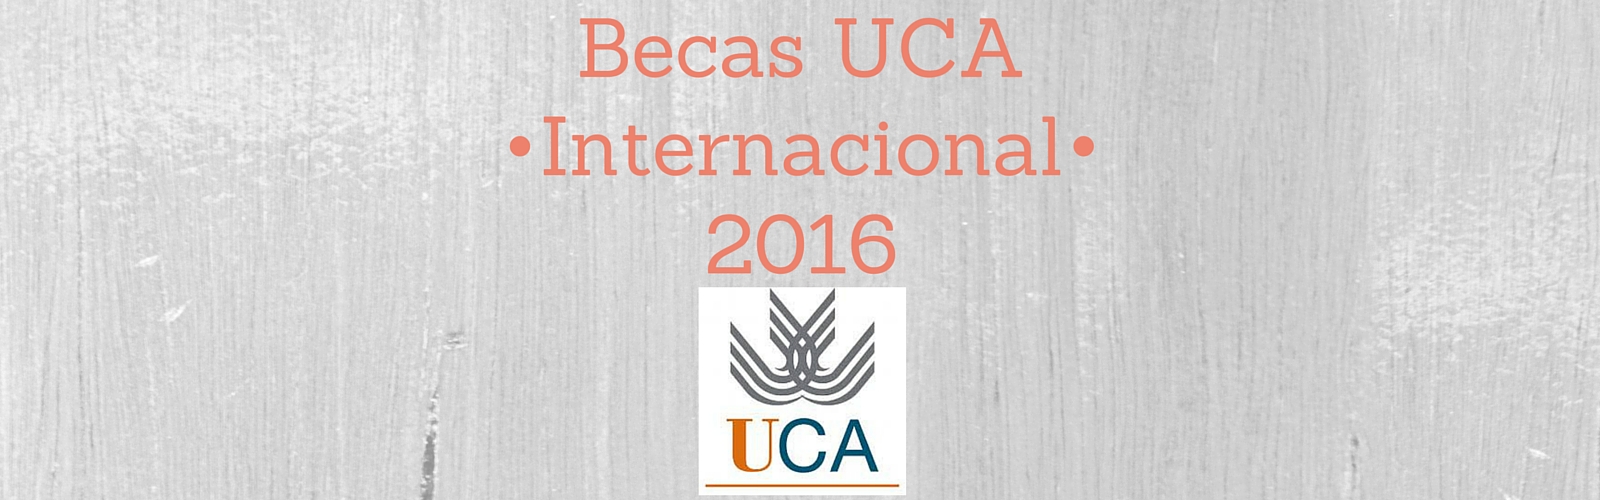 Becas UCA Internacional 2016